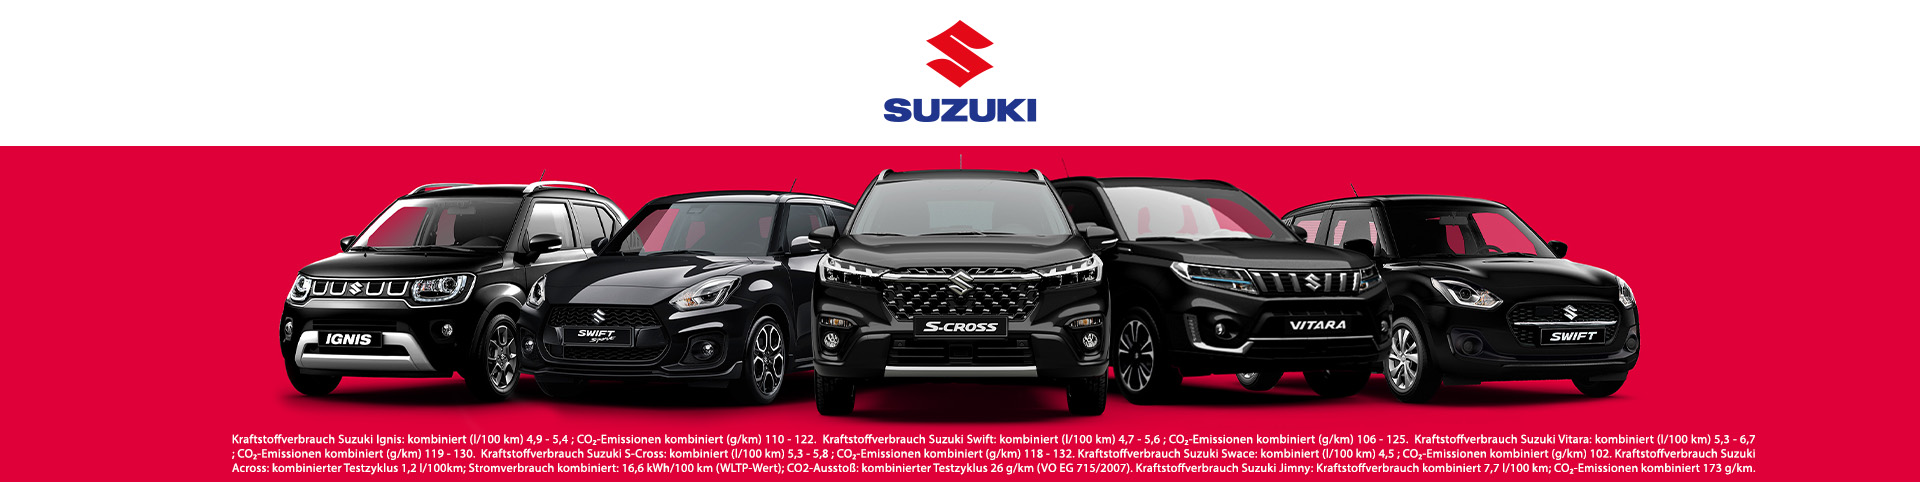 Suzuki bei Preckel Automobile